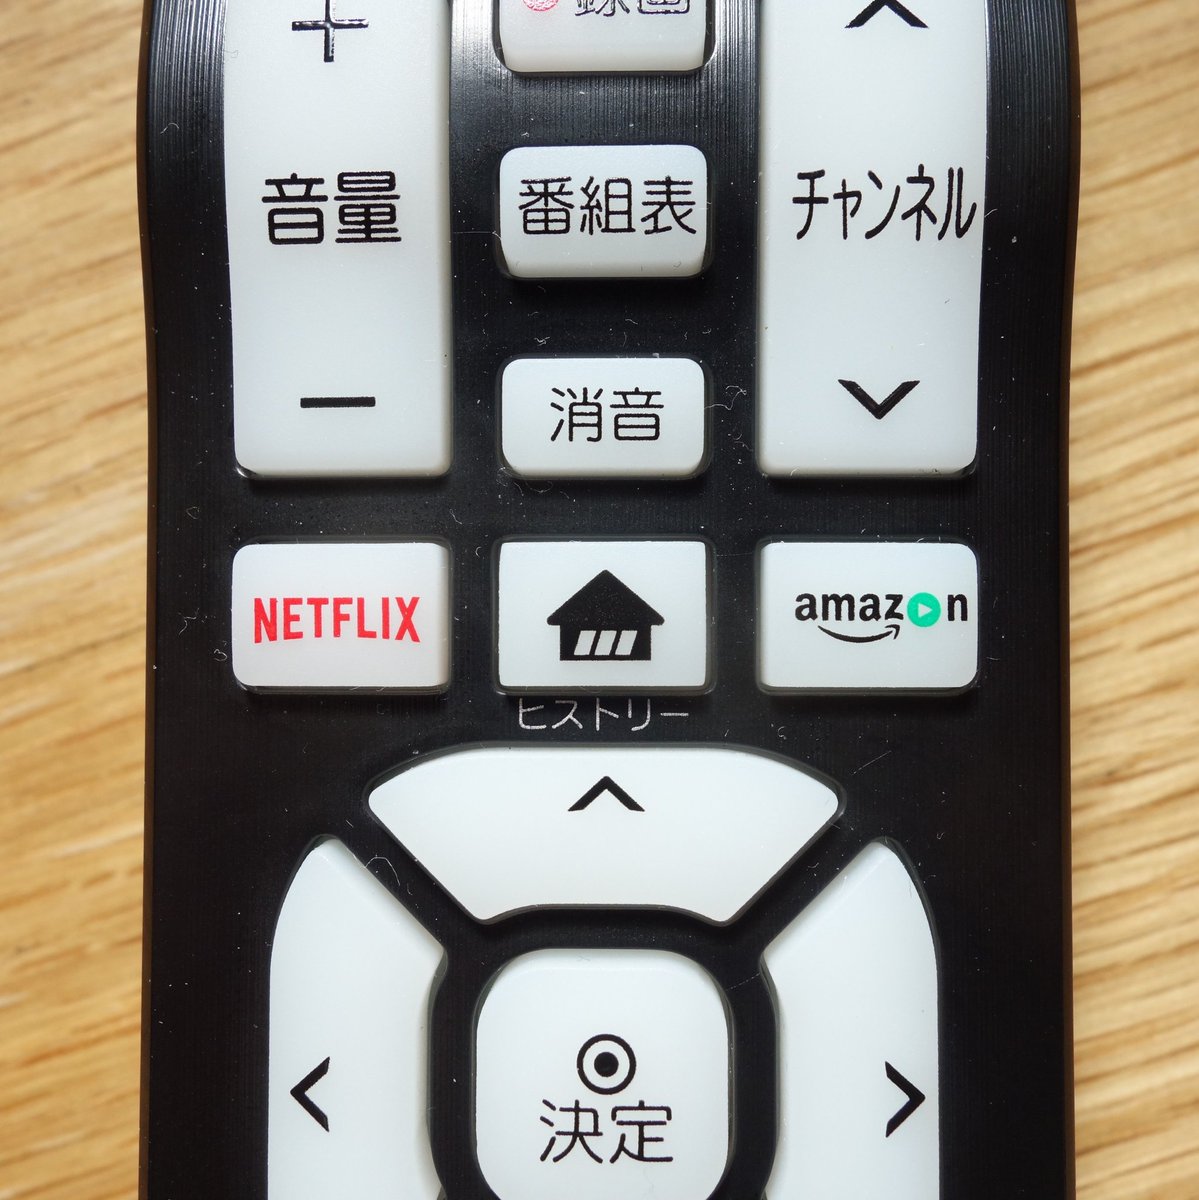 Twitter 上的 Shikakun 最近のテレビのリモコンには Netflix のボタンがついてるらしいというのは知ってたけど Lg のテレビの リモコンは Amazon プライムビデオのボタンもついてて驚いたし チャンネルの数字ボタンより大きく押しやすいところに置かれてて すごい